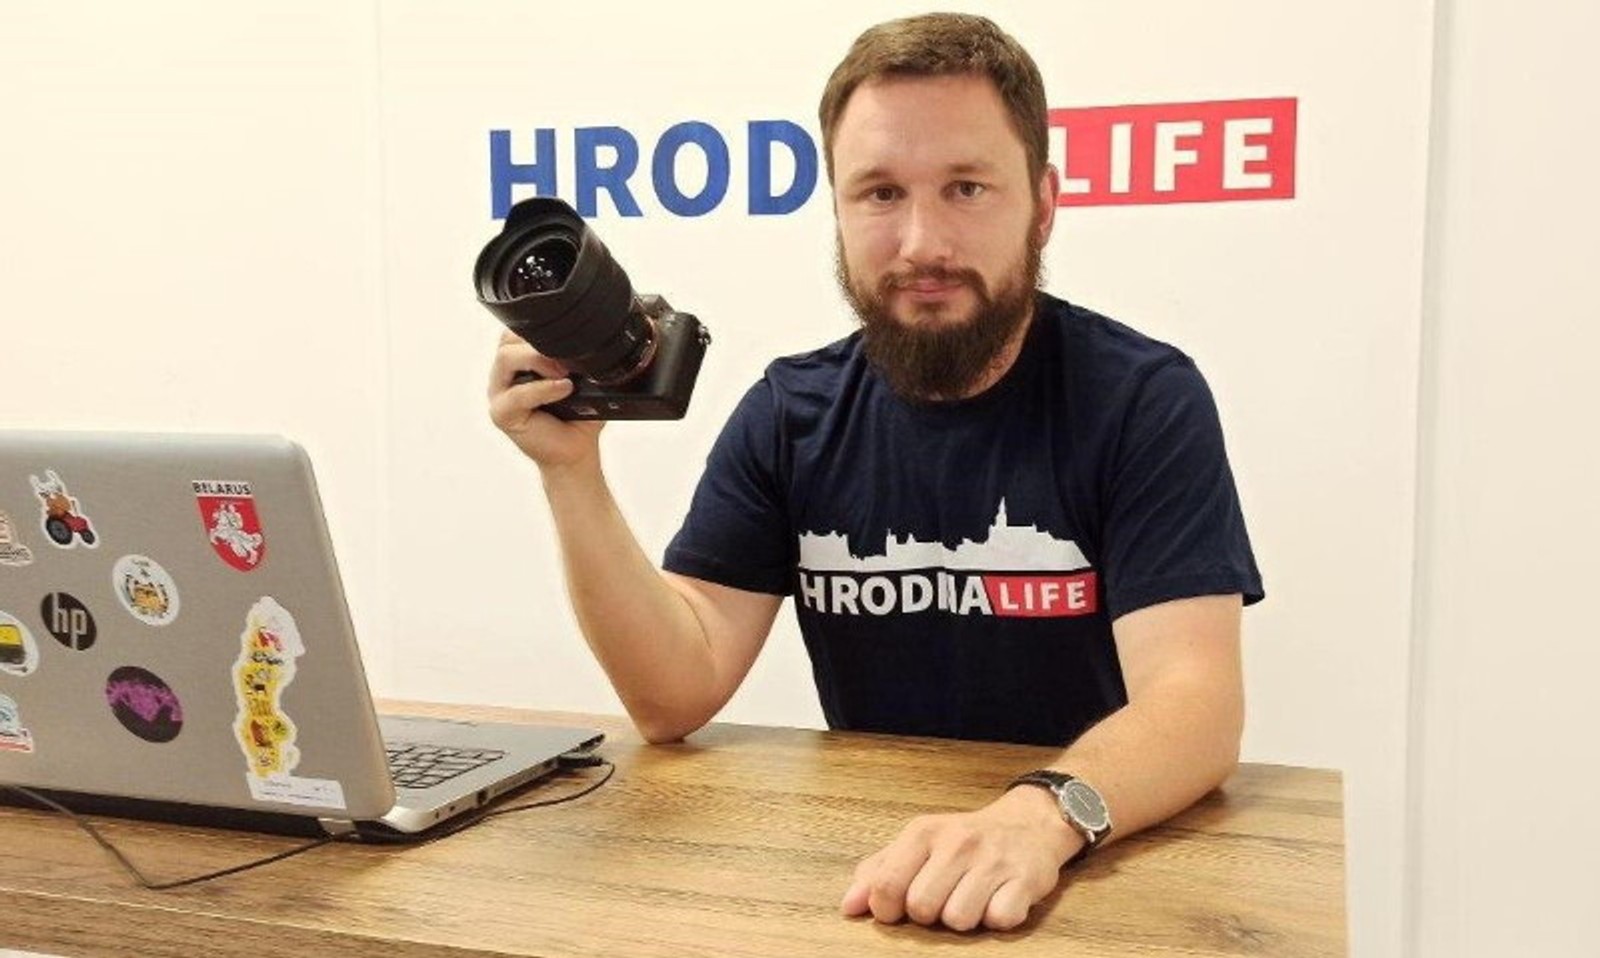 У Білорусі затримали головного редактора «Hrodnа.life» Олексія Шота. Раніше він працював в Tut.bу